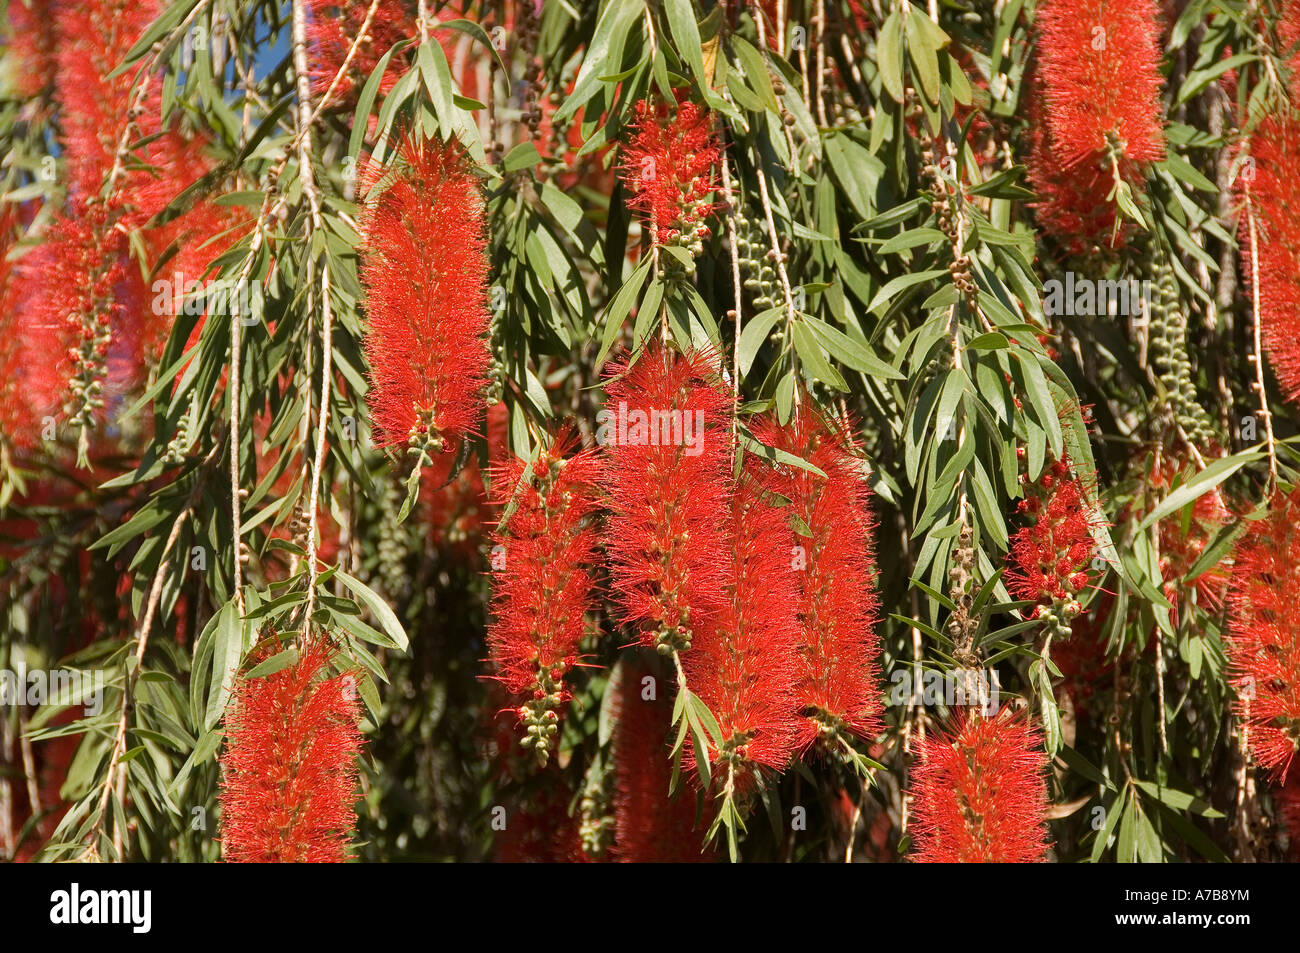 Gros plan de fleurs rouges fleur sur le bottlebrush bouteille Brush arbre callistemon glaucus Madeira Portugal eu Europe Banque D'Images